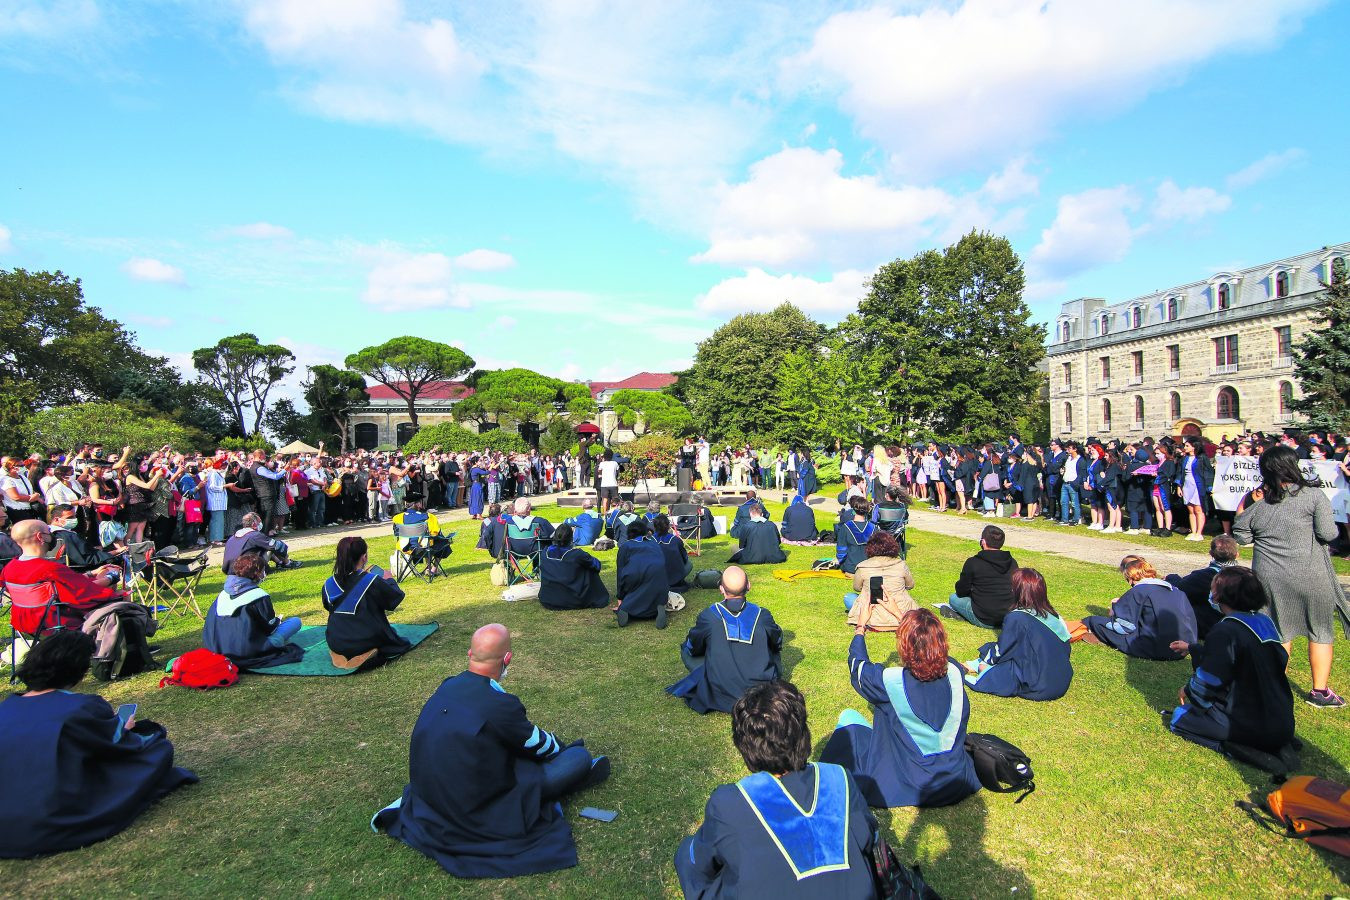 Girilemeyen mezuniyete karşı kampüs bahçesinde 1.000 kişi